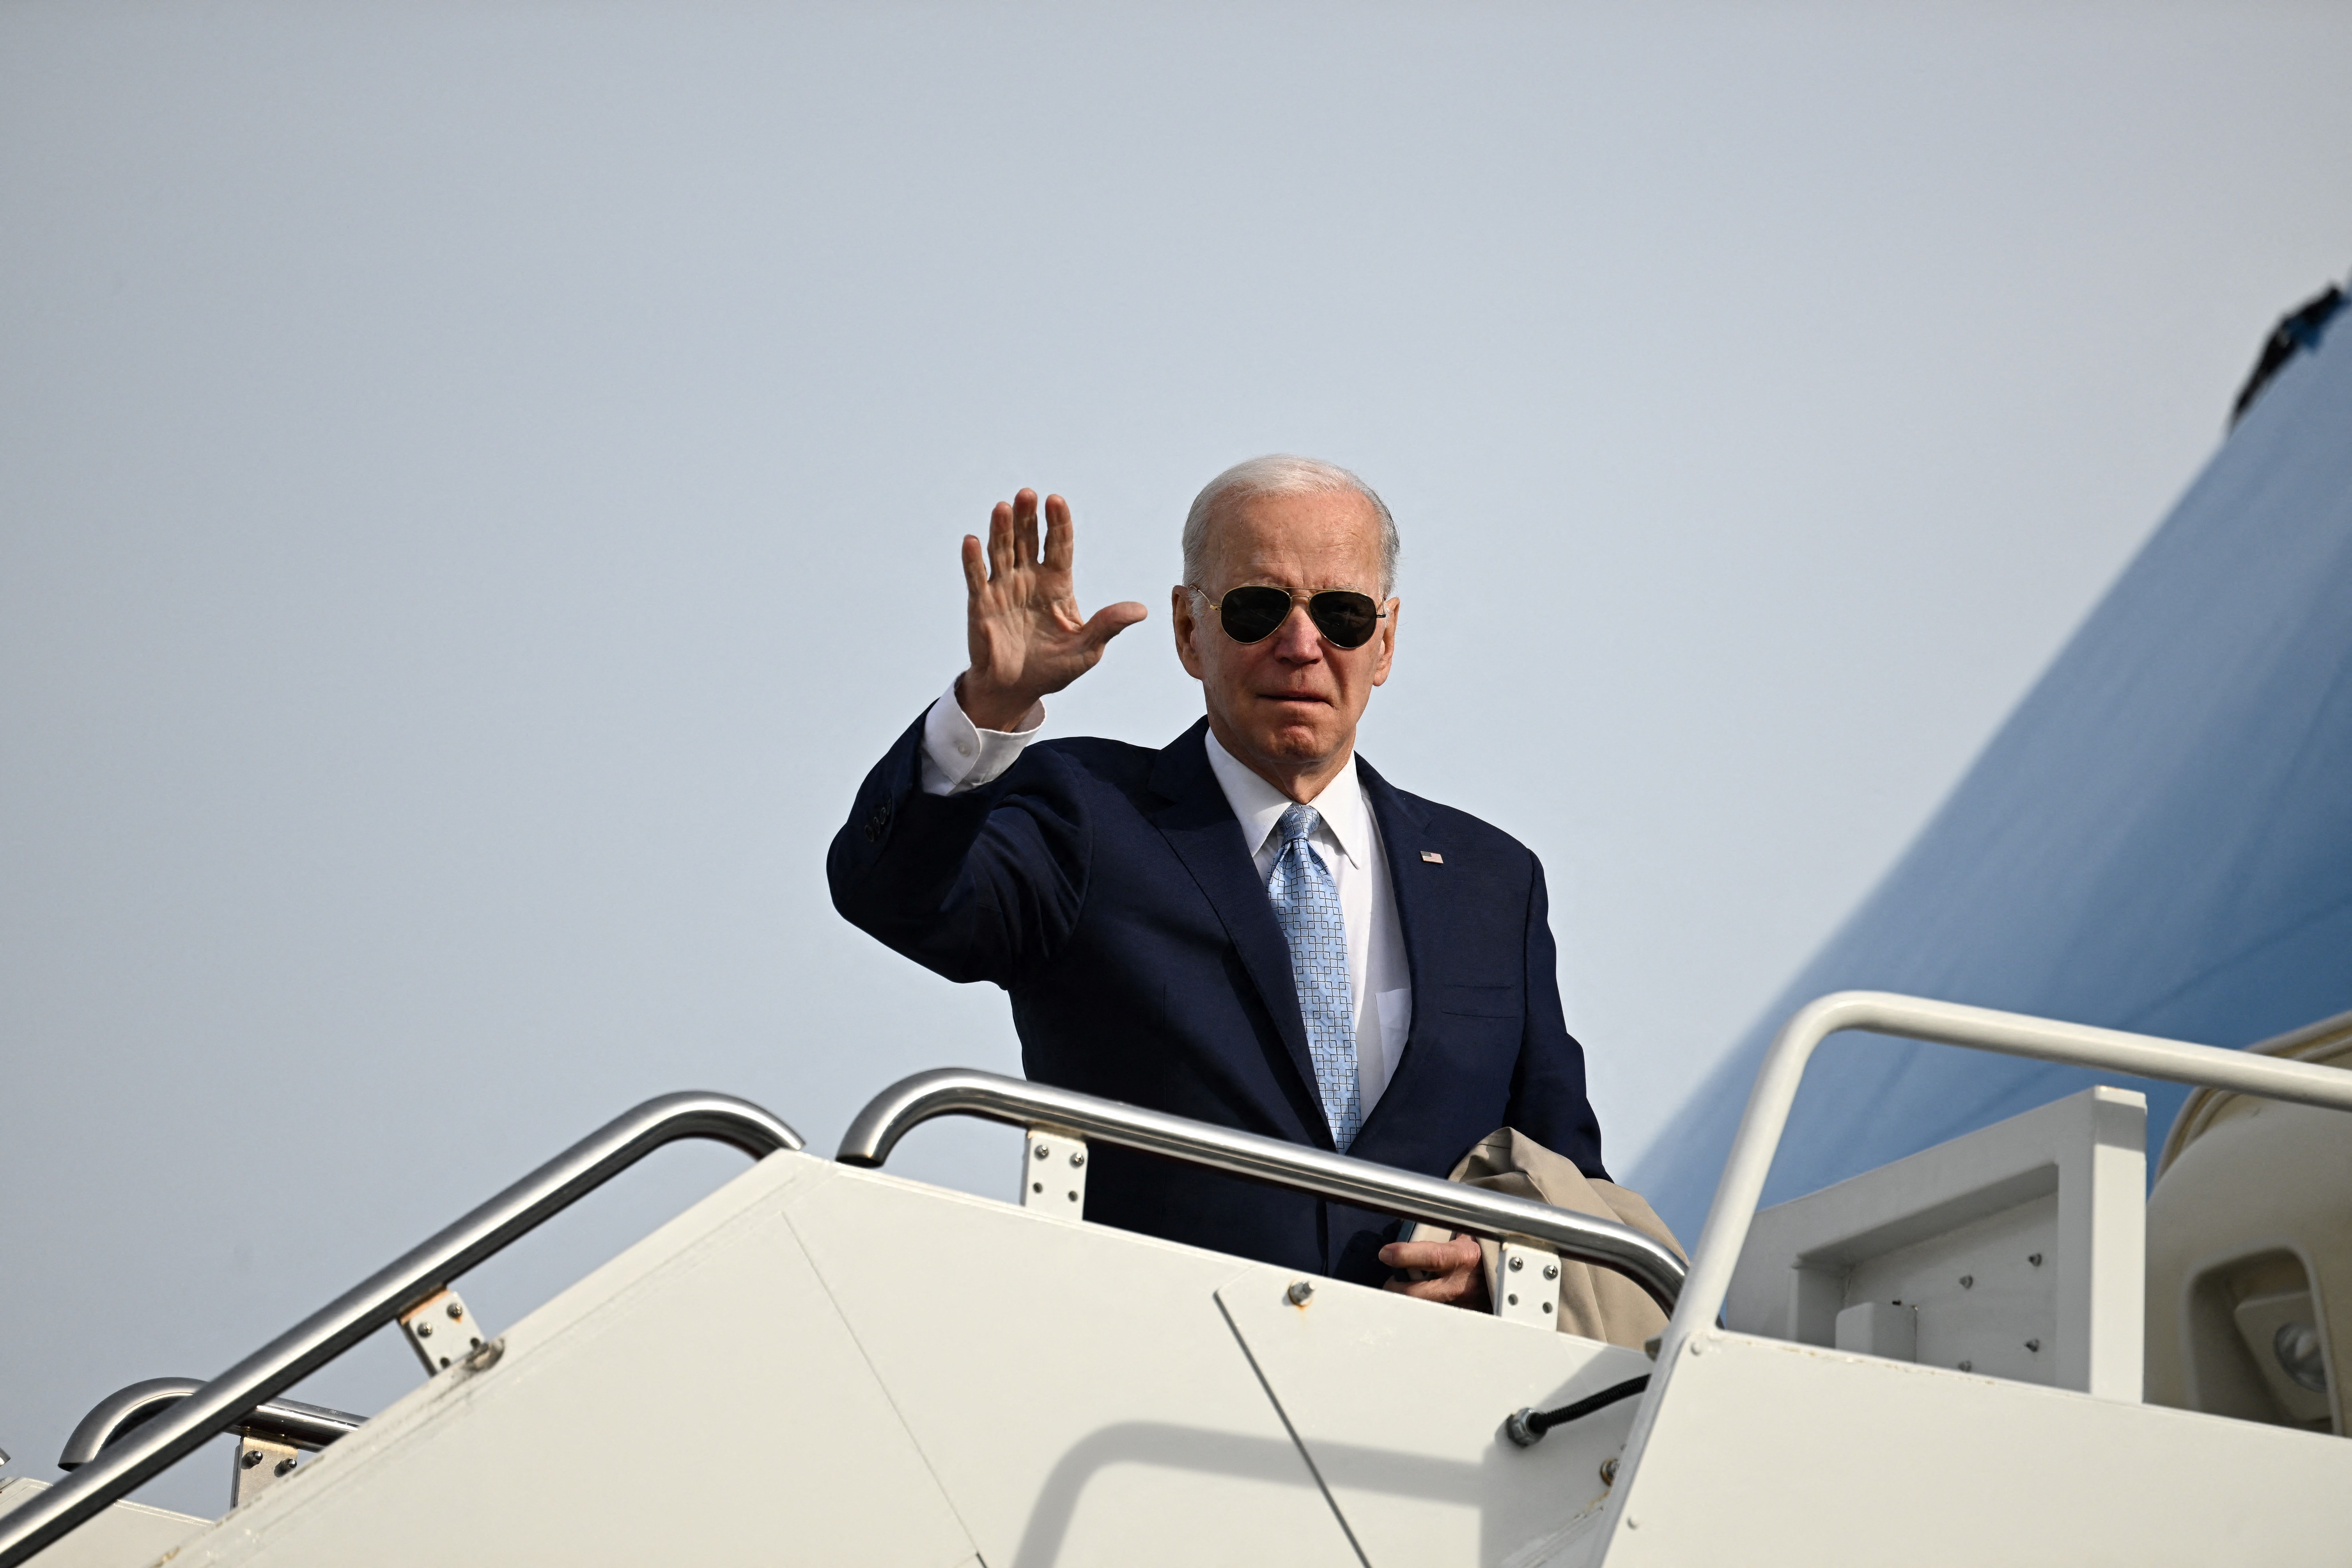 Joe Biden boards Air Force One to head to El Paso, Texas. 